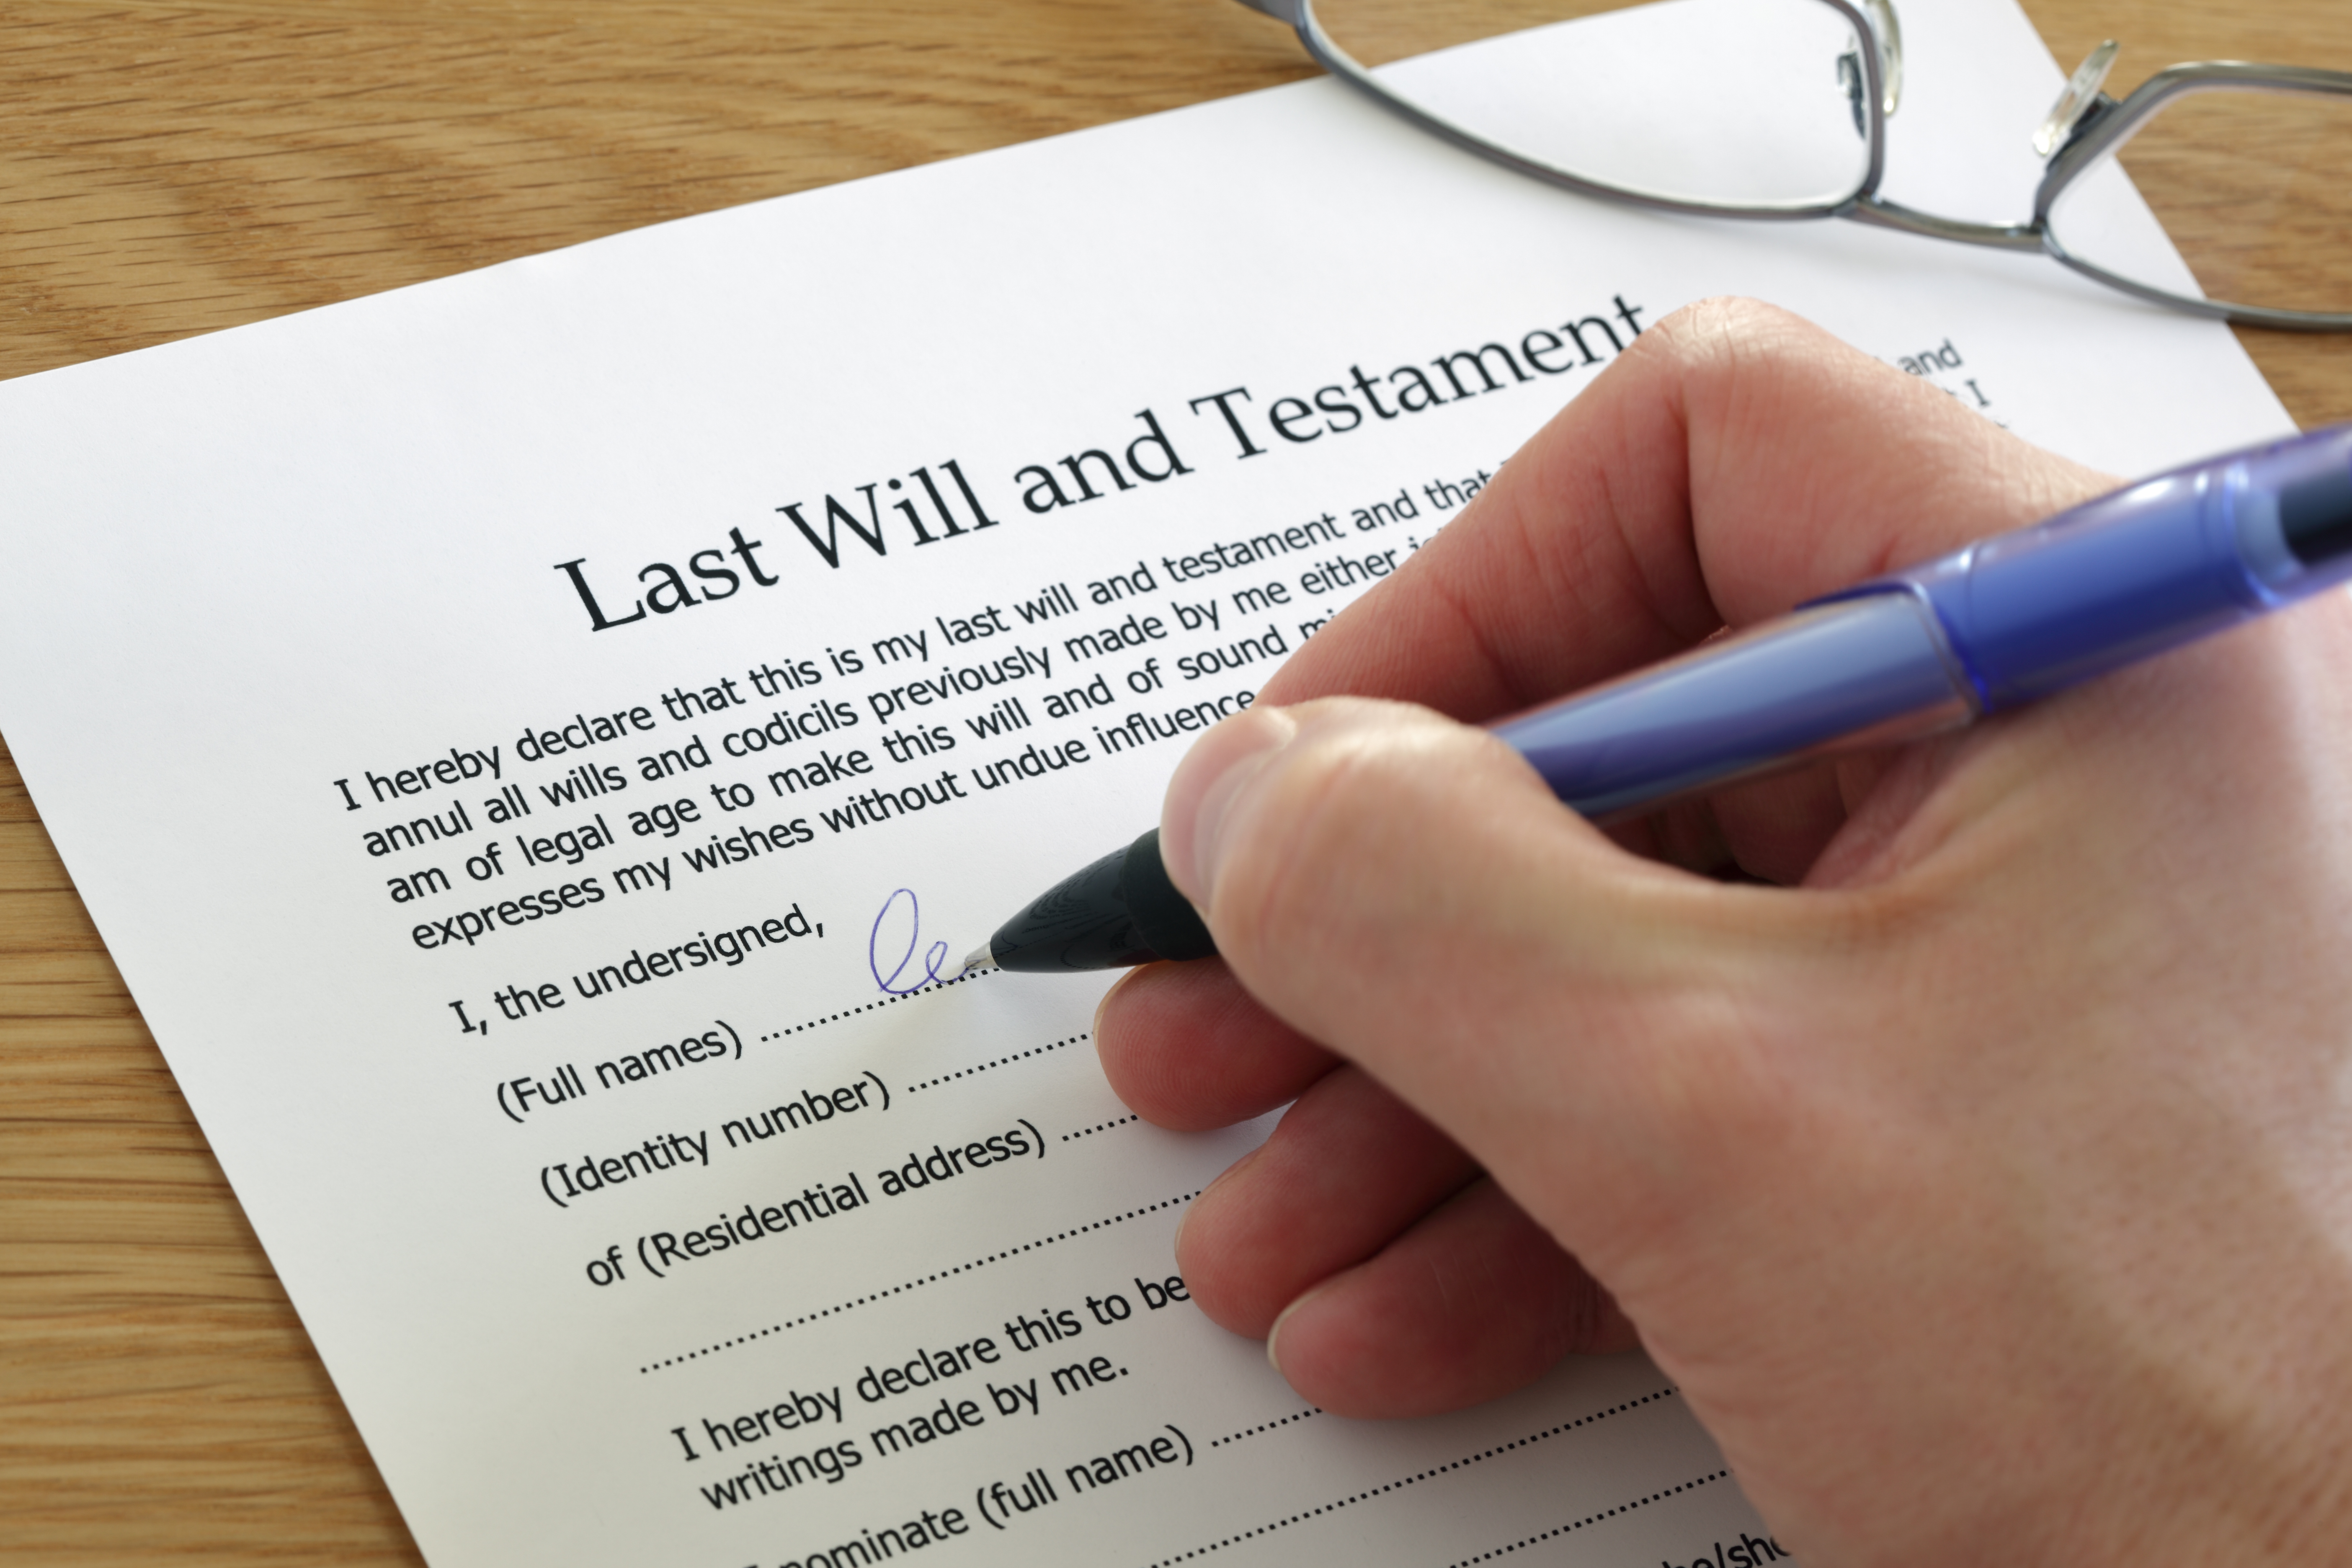 Une personne signant ses dernières volontés | Source : Shutterstock